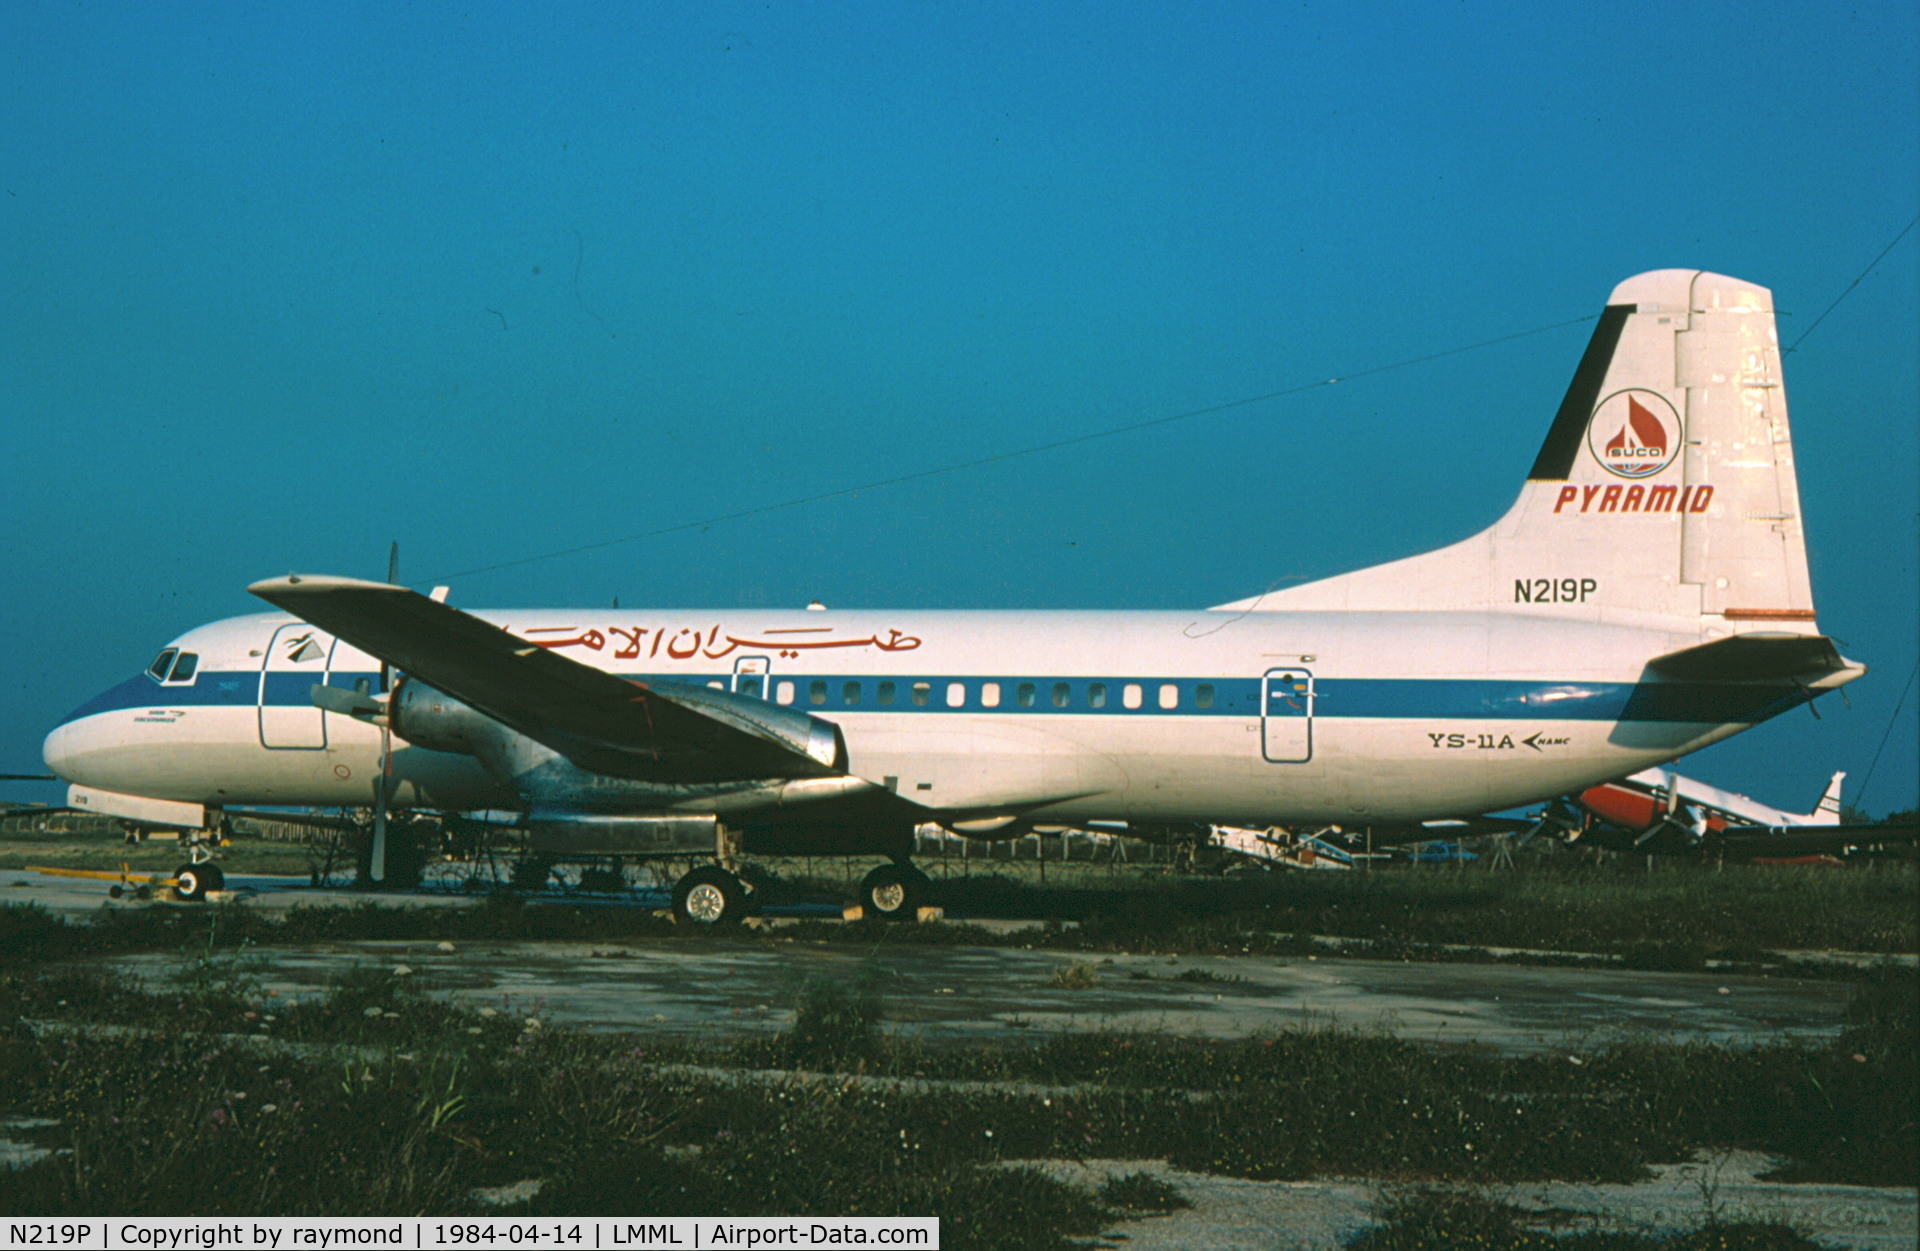 N219P, 1969 Nihon YS-11A-500 C/N 2109, YS11 N219P Pyramid Airlines